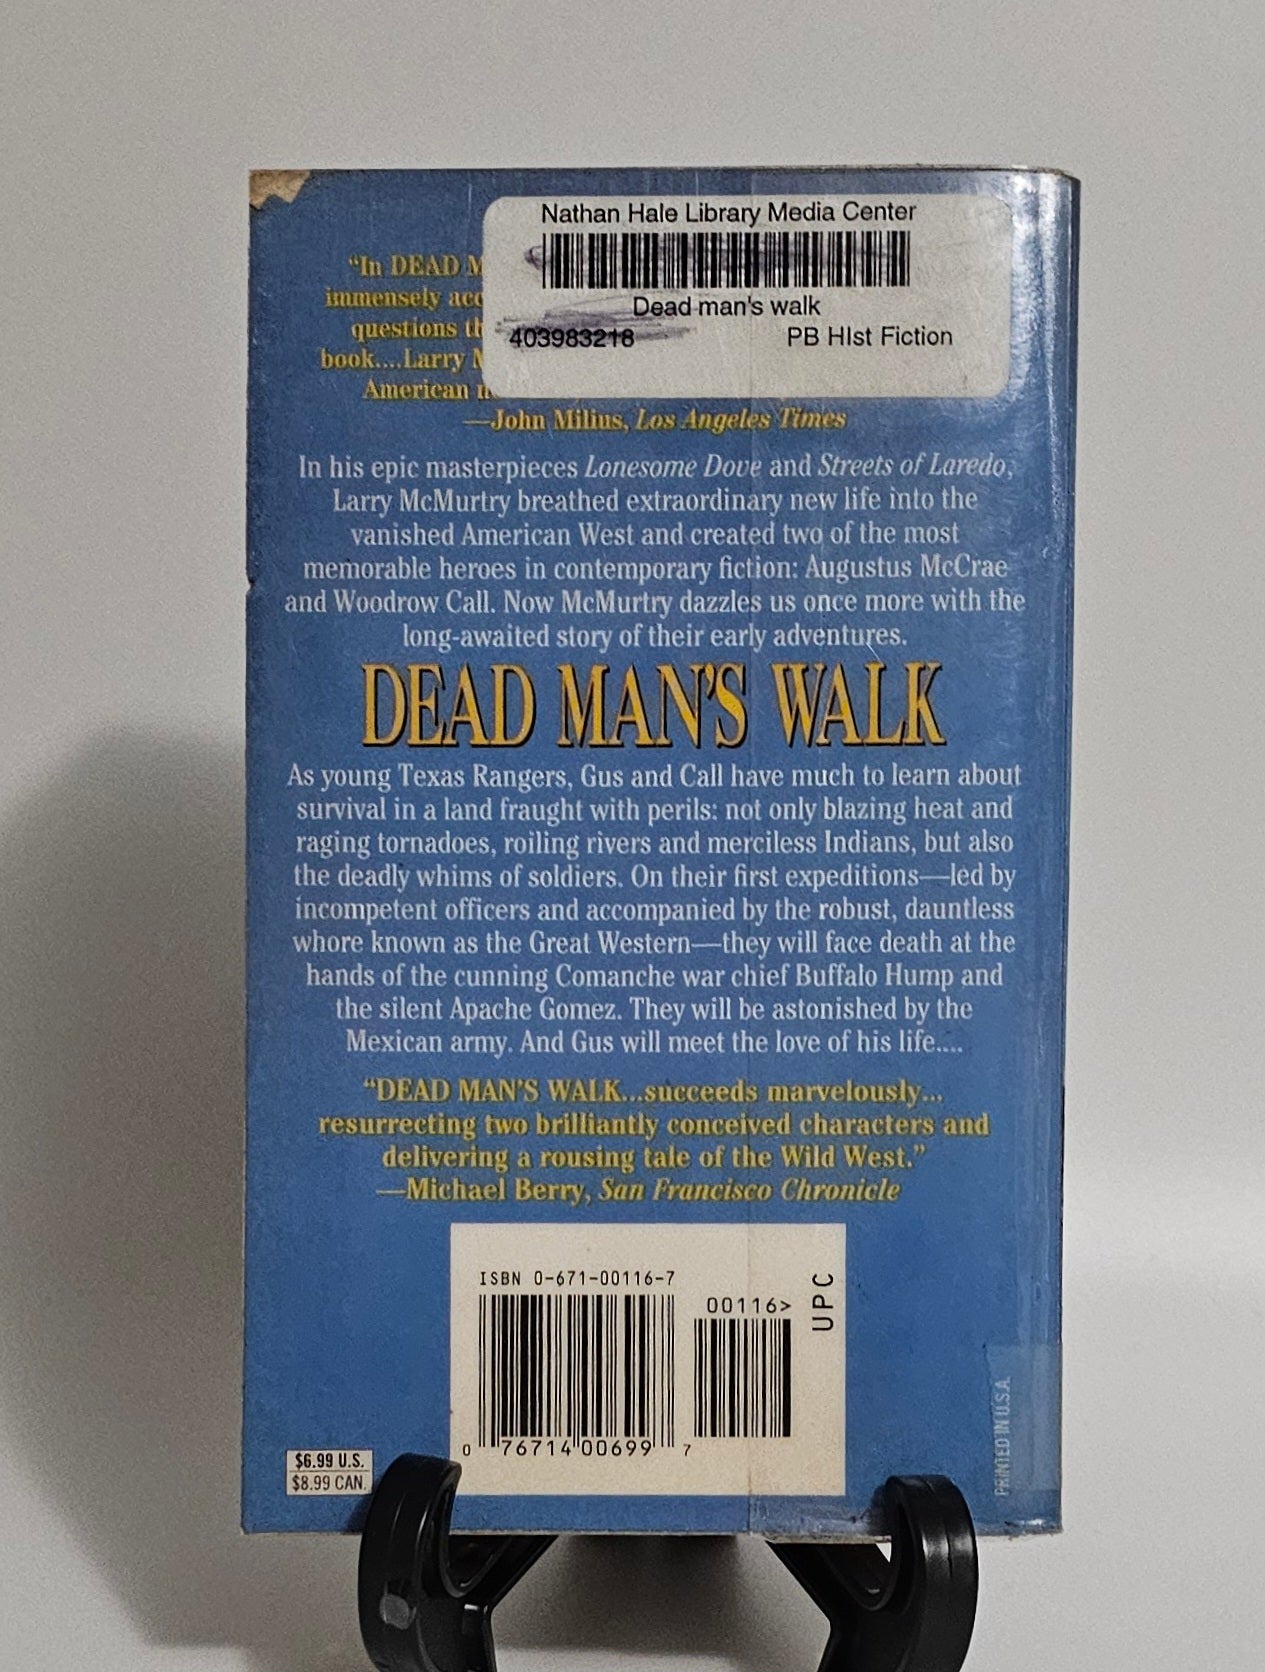 Dead Man's Walk by Larry McMurty